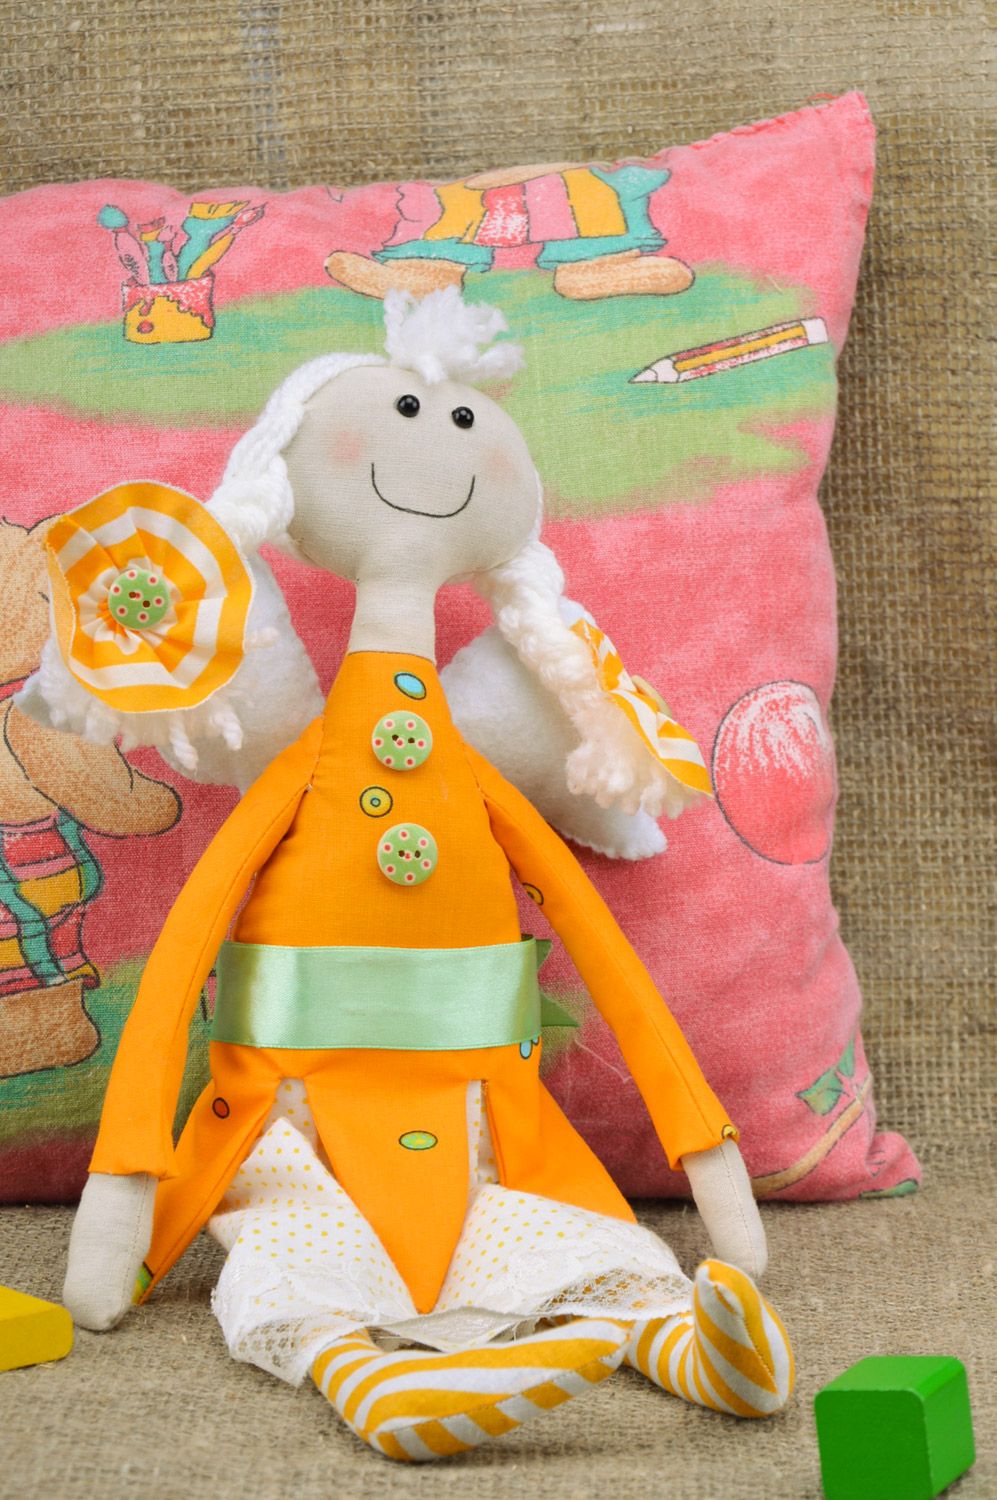 Мягкая кукла ручной работы текстильная в виде феи с косичками для детей желтая фото 1